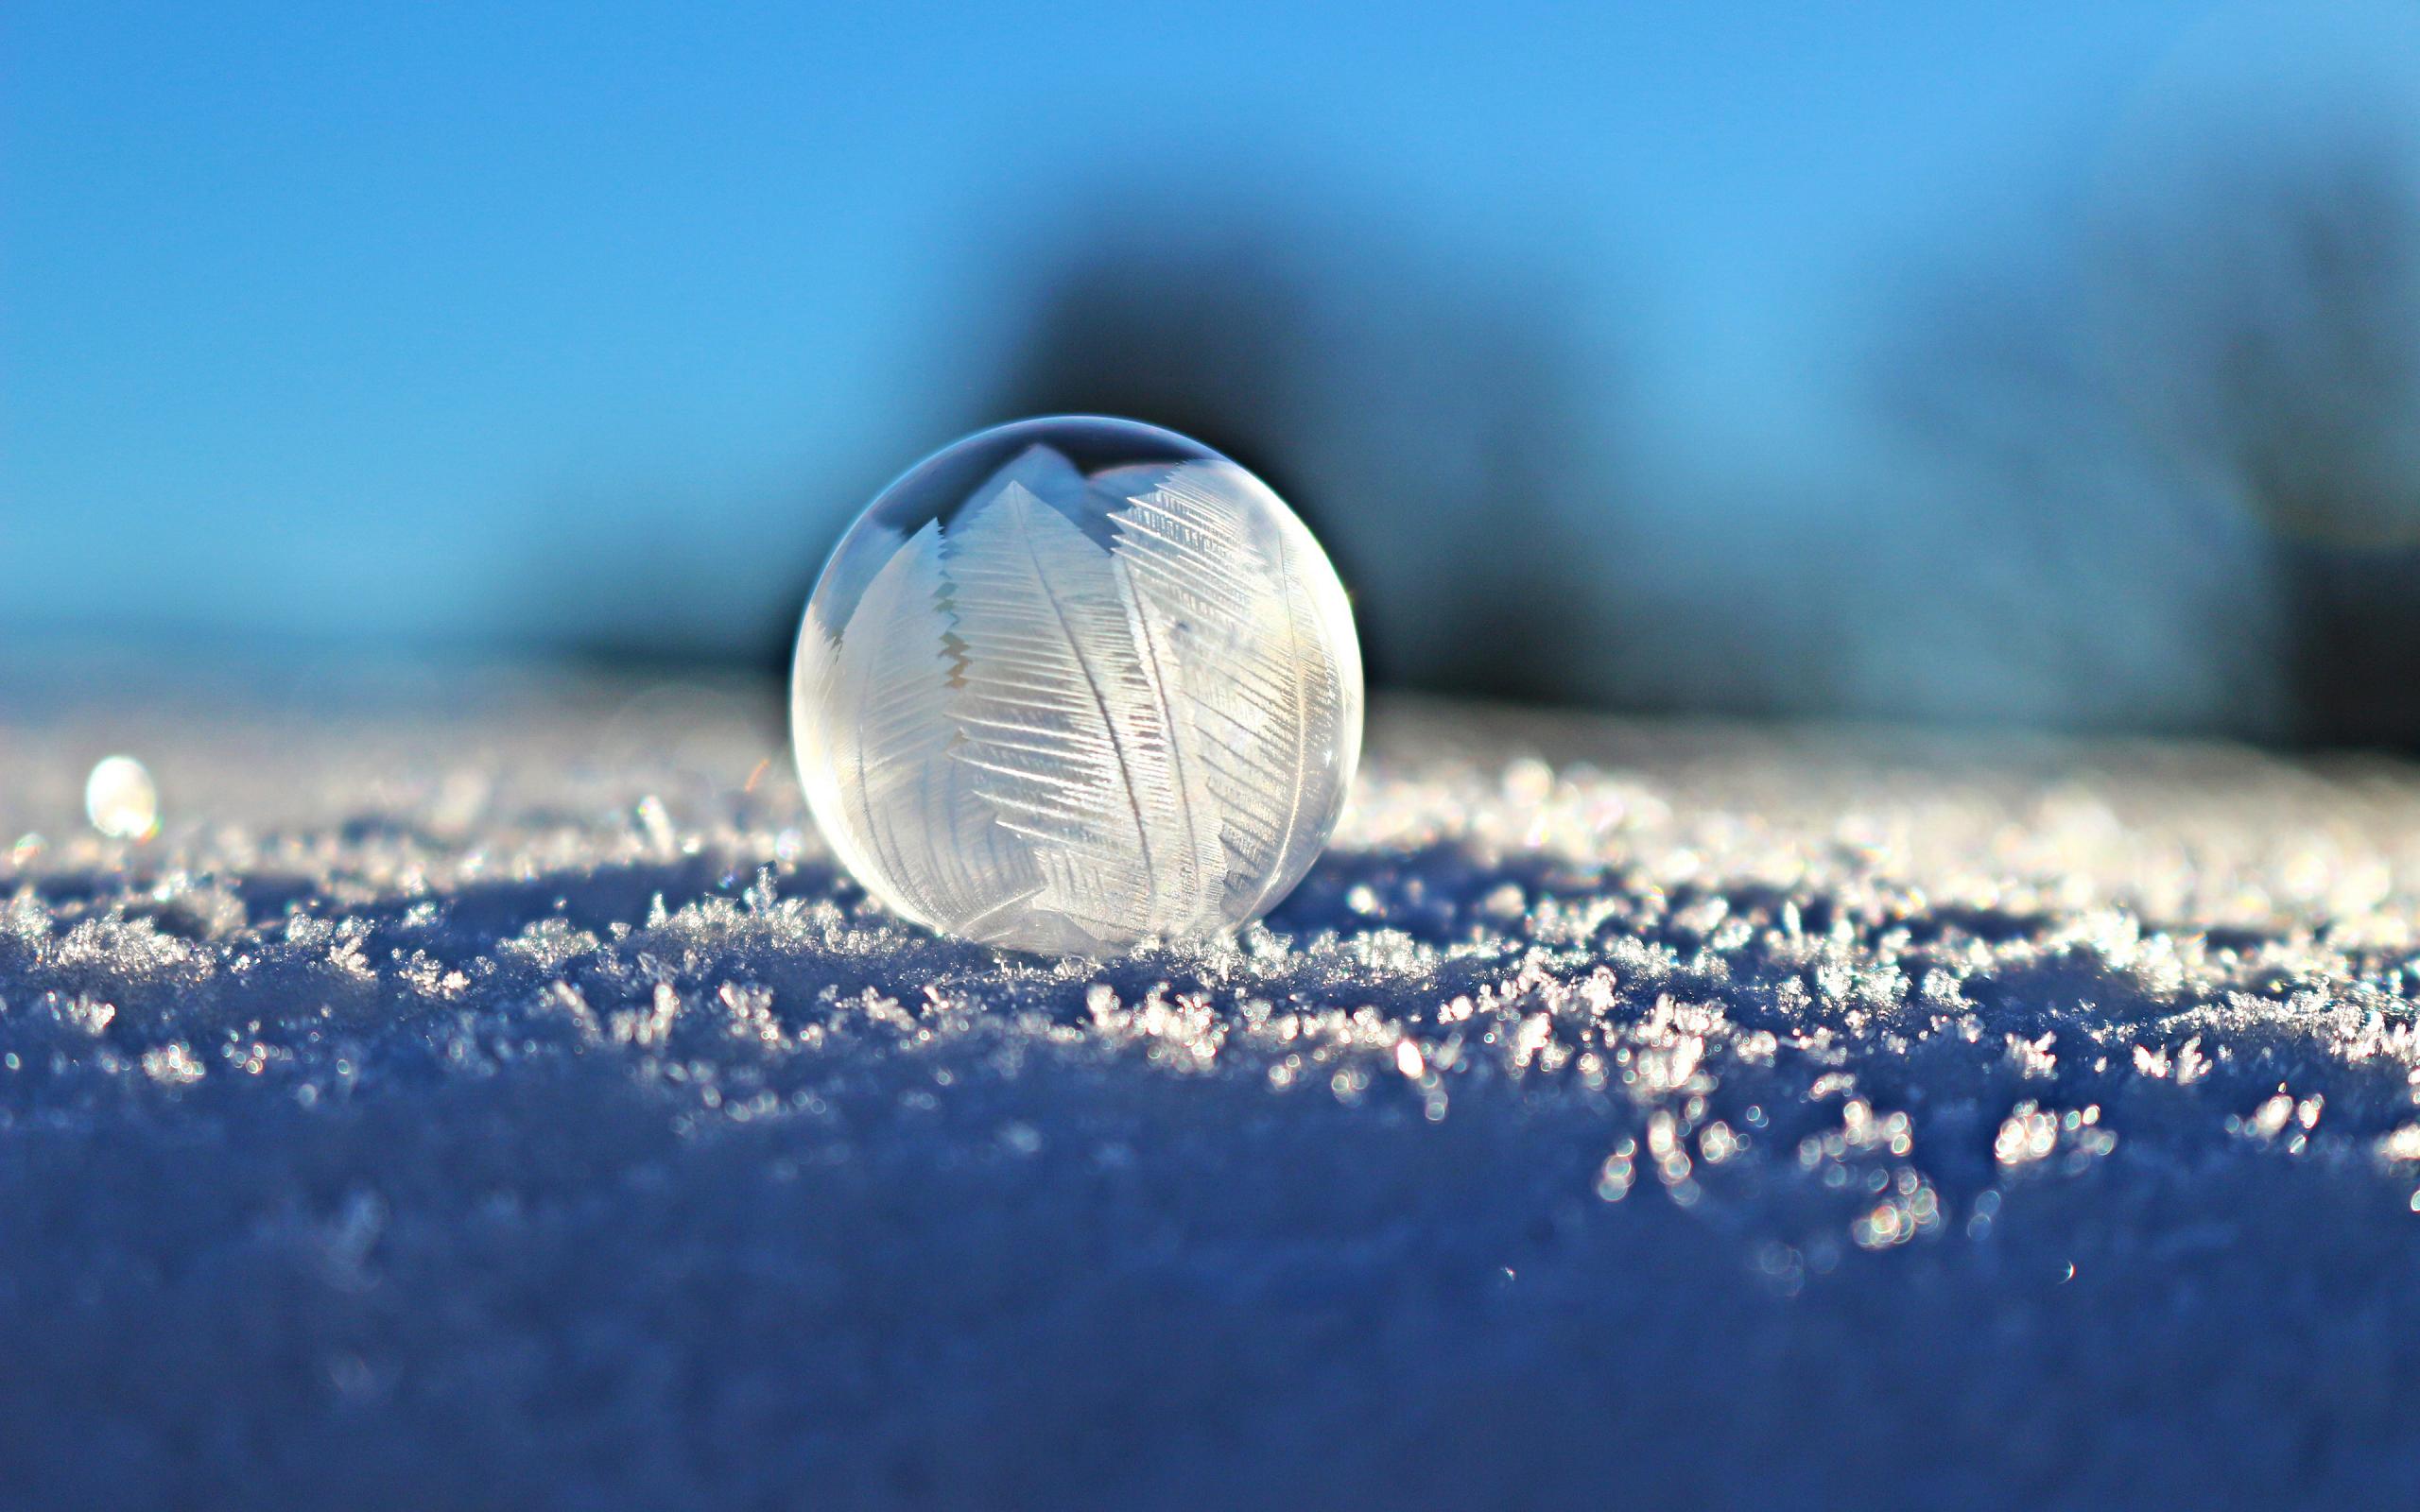 Скачать обои бесплатно Зима, Пузыри, Снег, Шар, Мороз, Фотографии, Макрос картинка на рабочий стол ПК